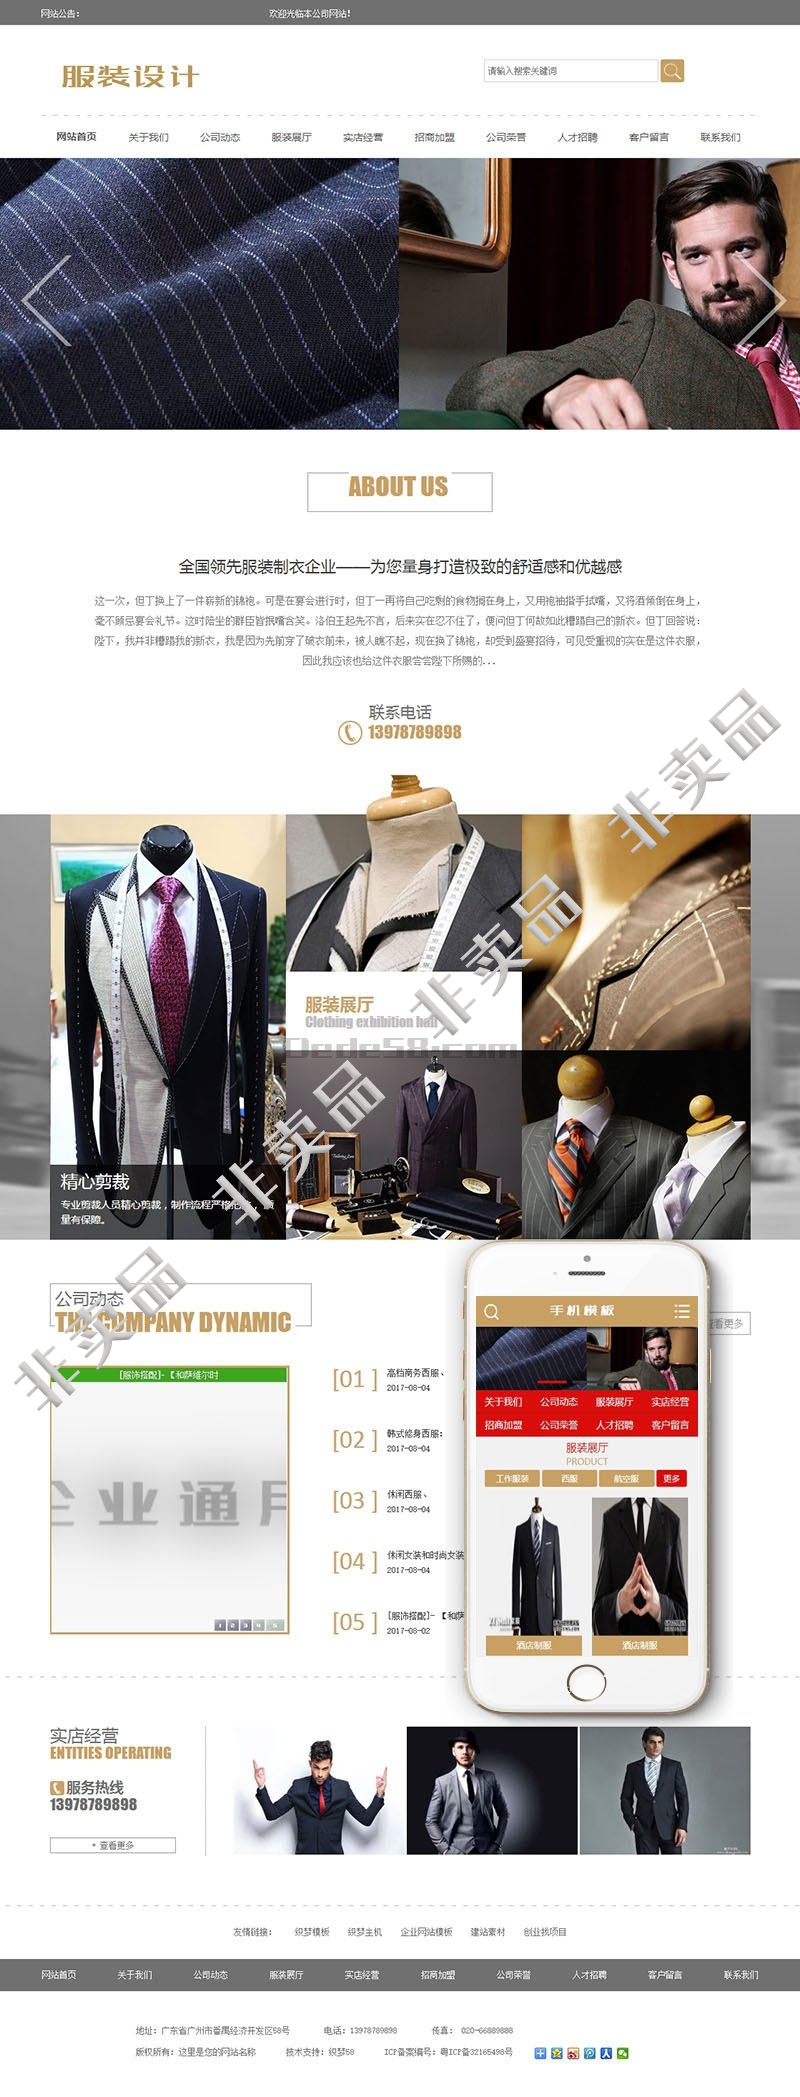 服装设计企业网站源码 dedecms织梦模板 PC+带手机端插图